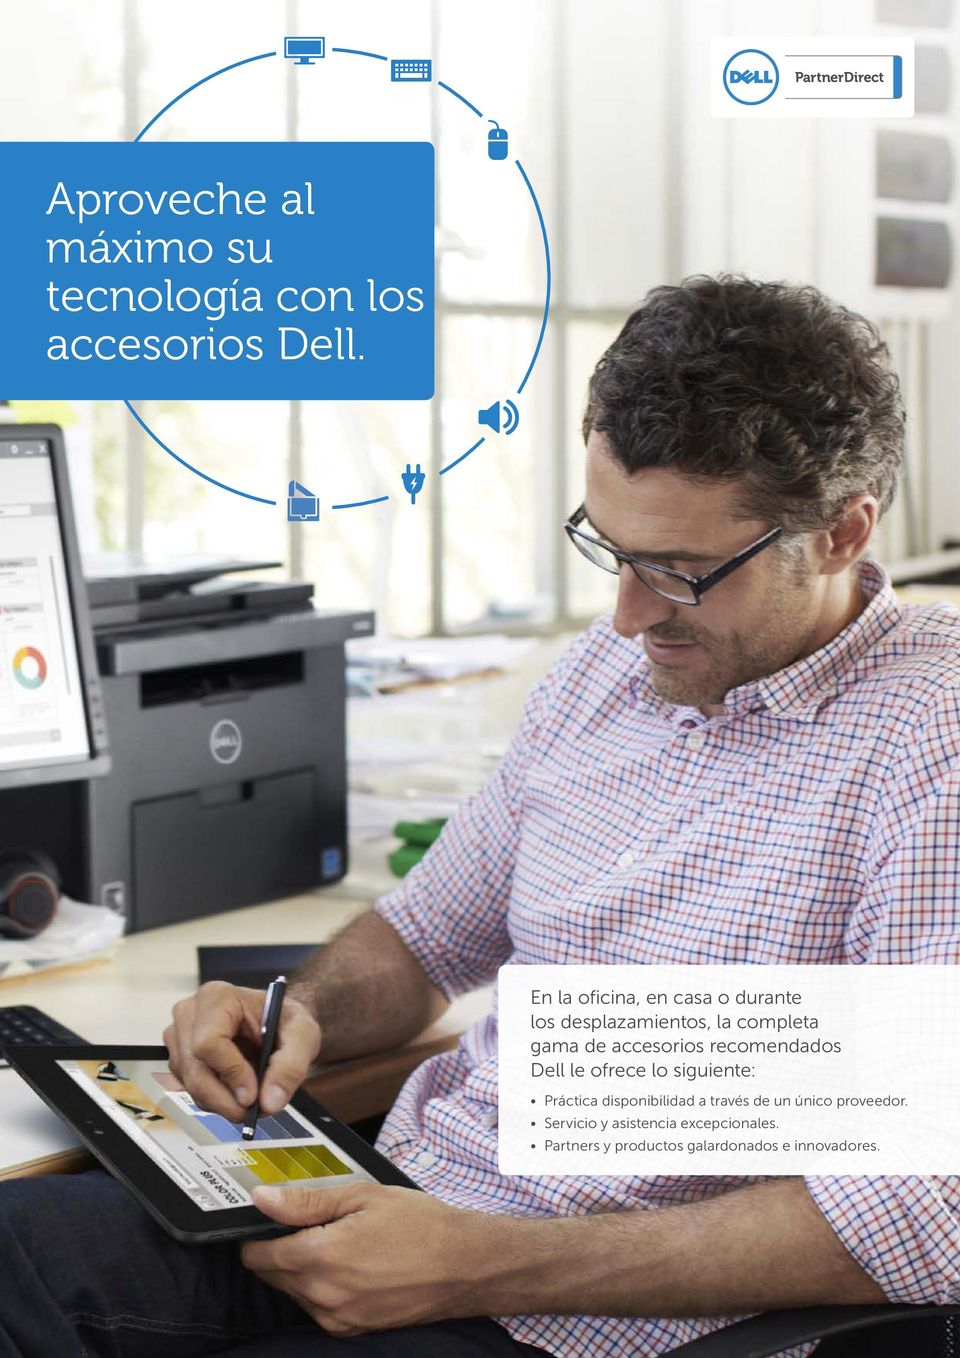 accesorios recomendados Dell le ofrece lo siguiente: Práctica disponibilidad a